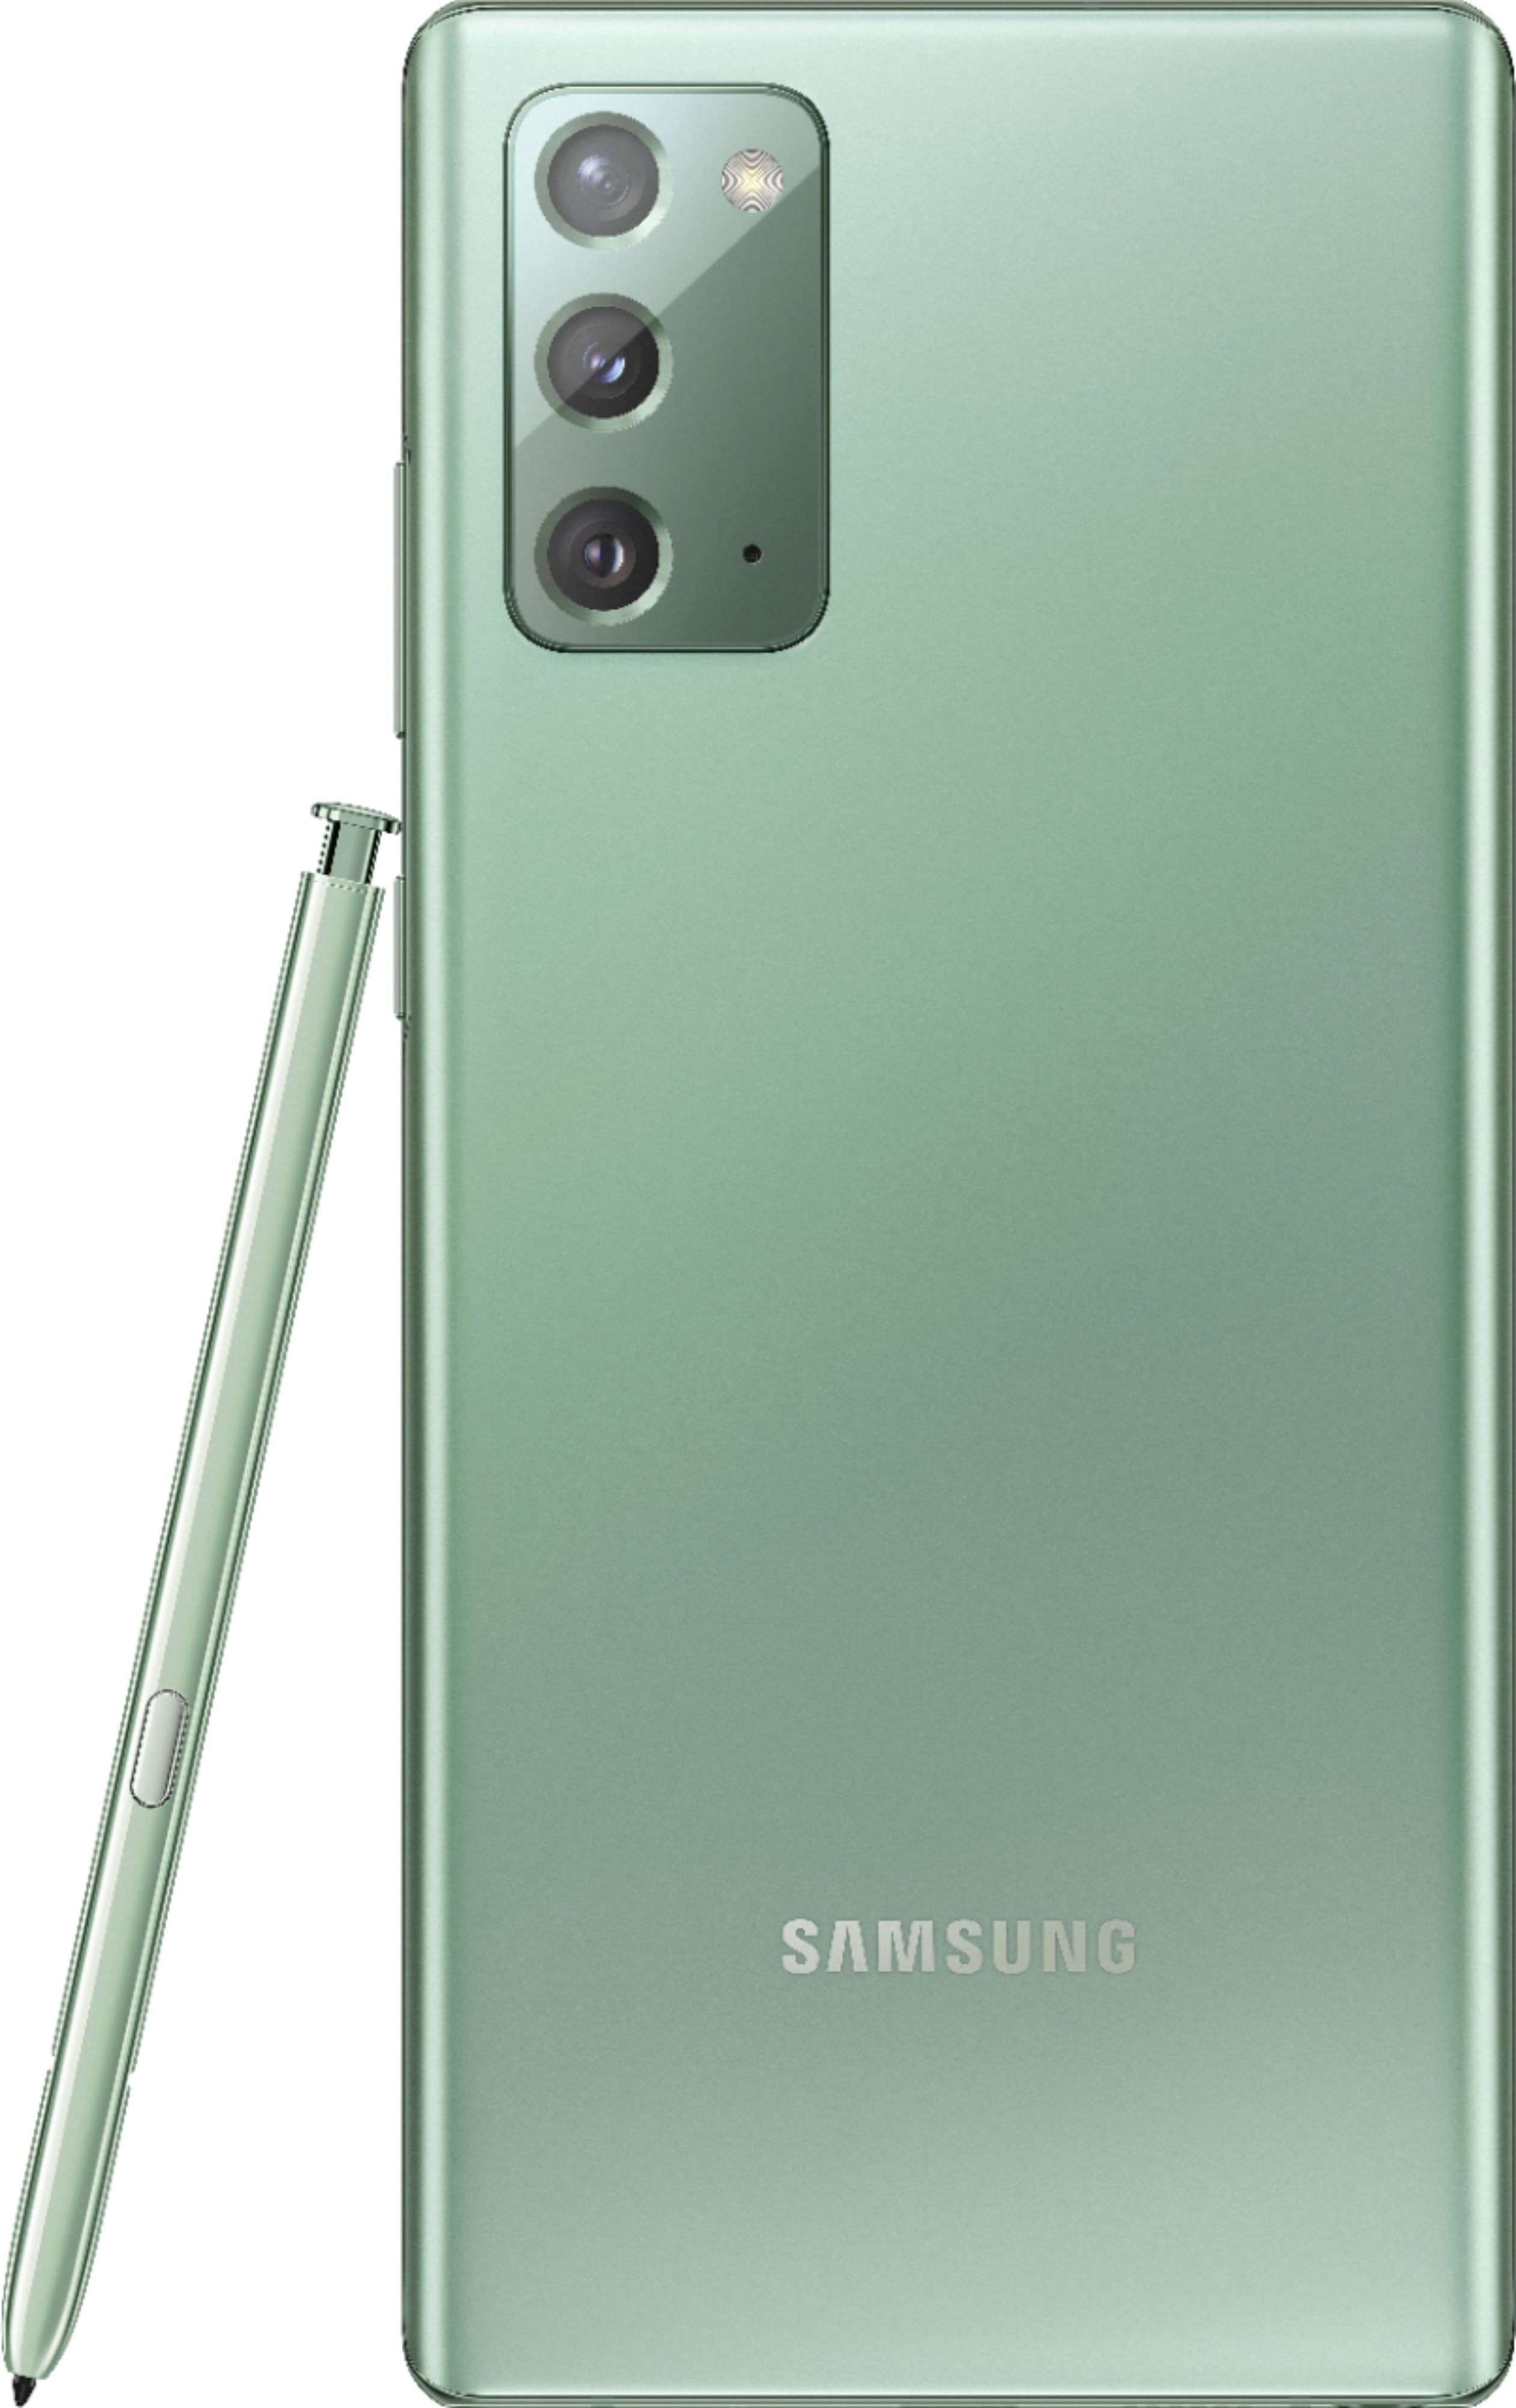 Samsung Galaxy Note20 5G SM-N981U - 128GB - Mystic Gray (Unlocked